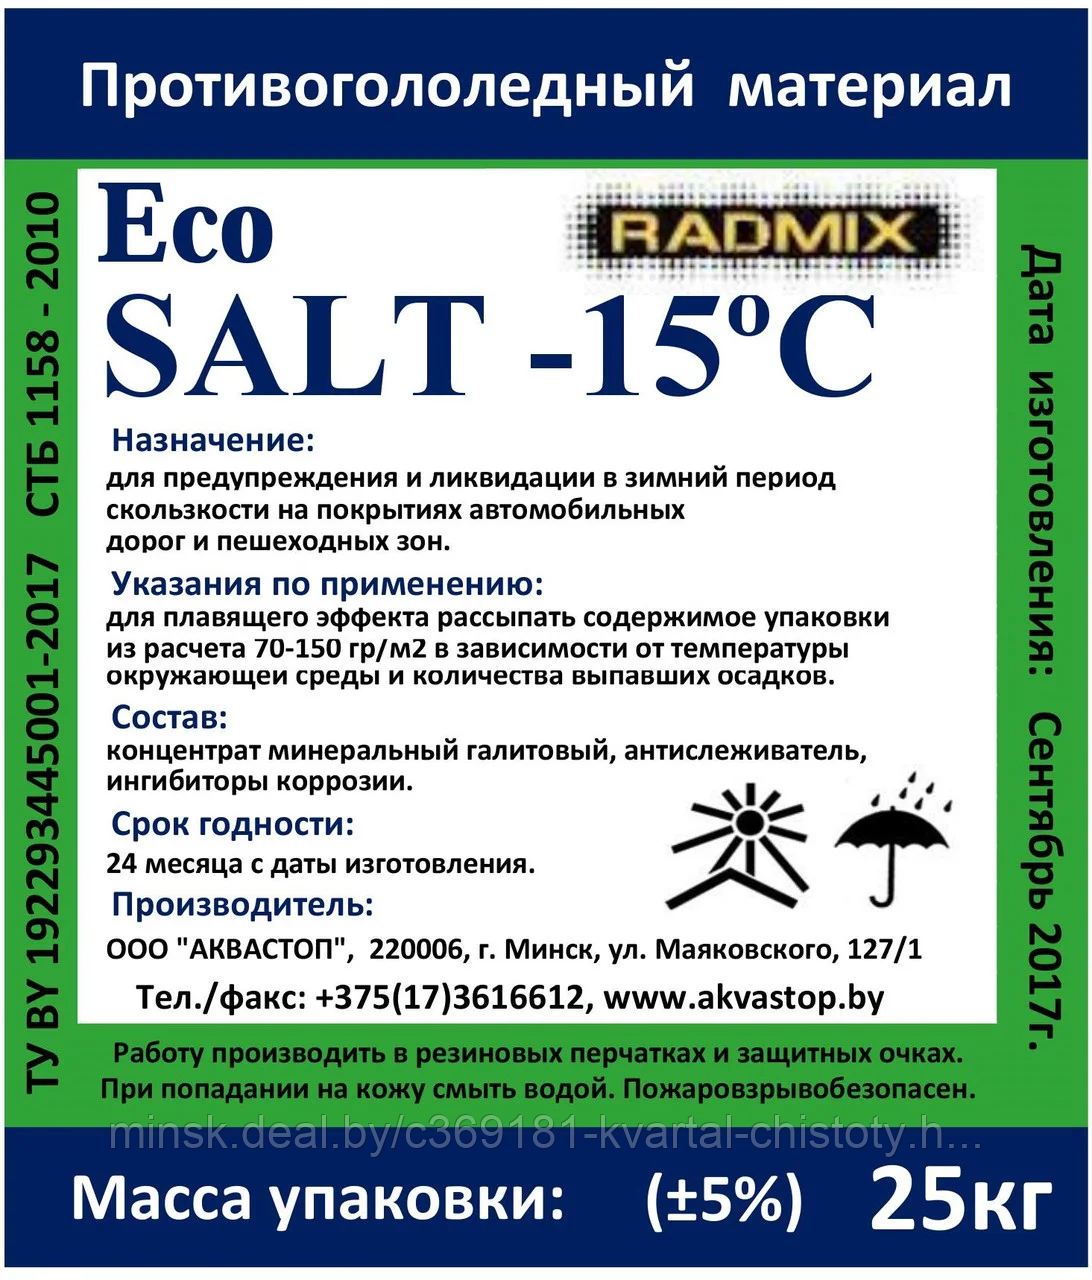 Противогололедный материал"RADMIX" Eco Salt Long мешок 25 кг РБ